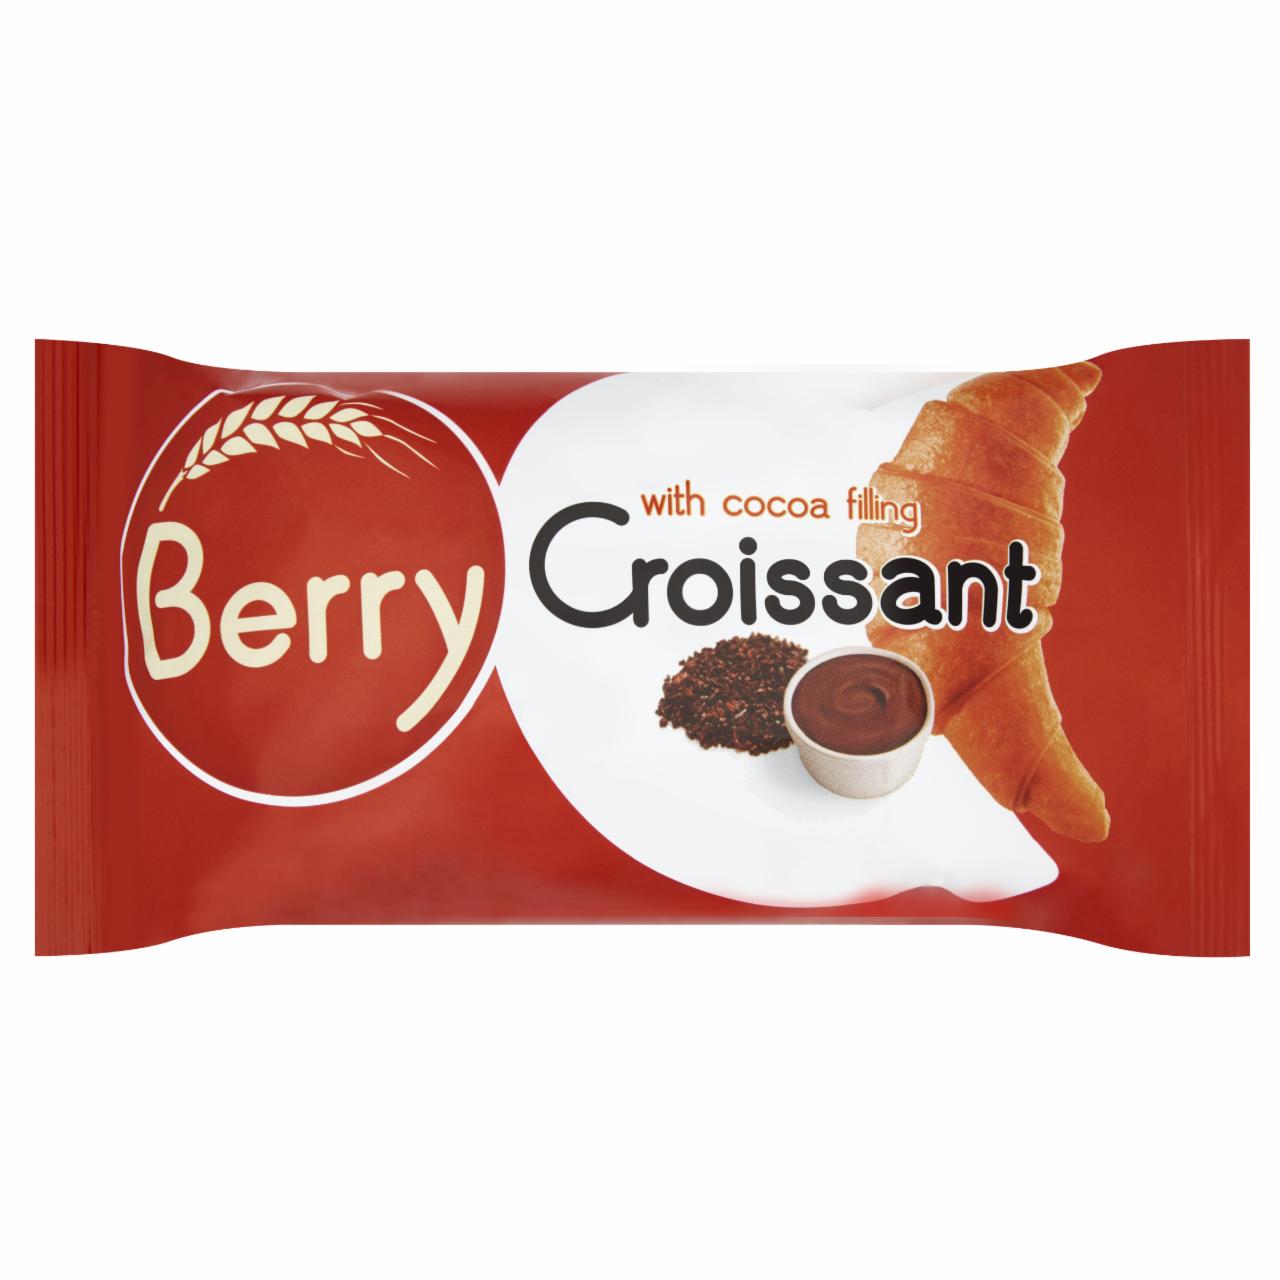 Képek - Berry kakaós krémmel töltött croissant 50 g